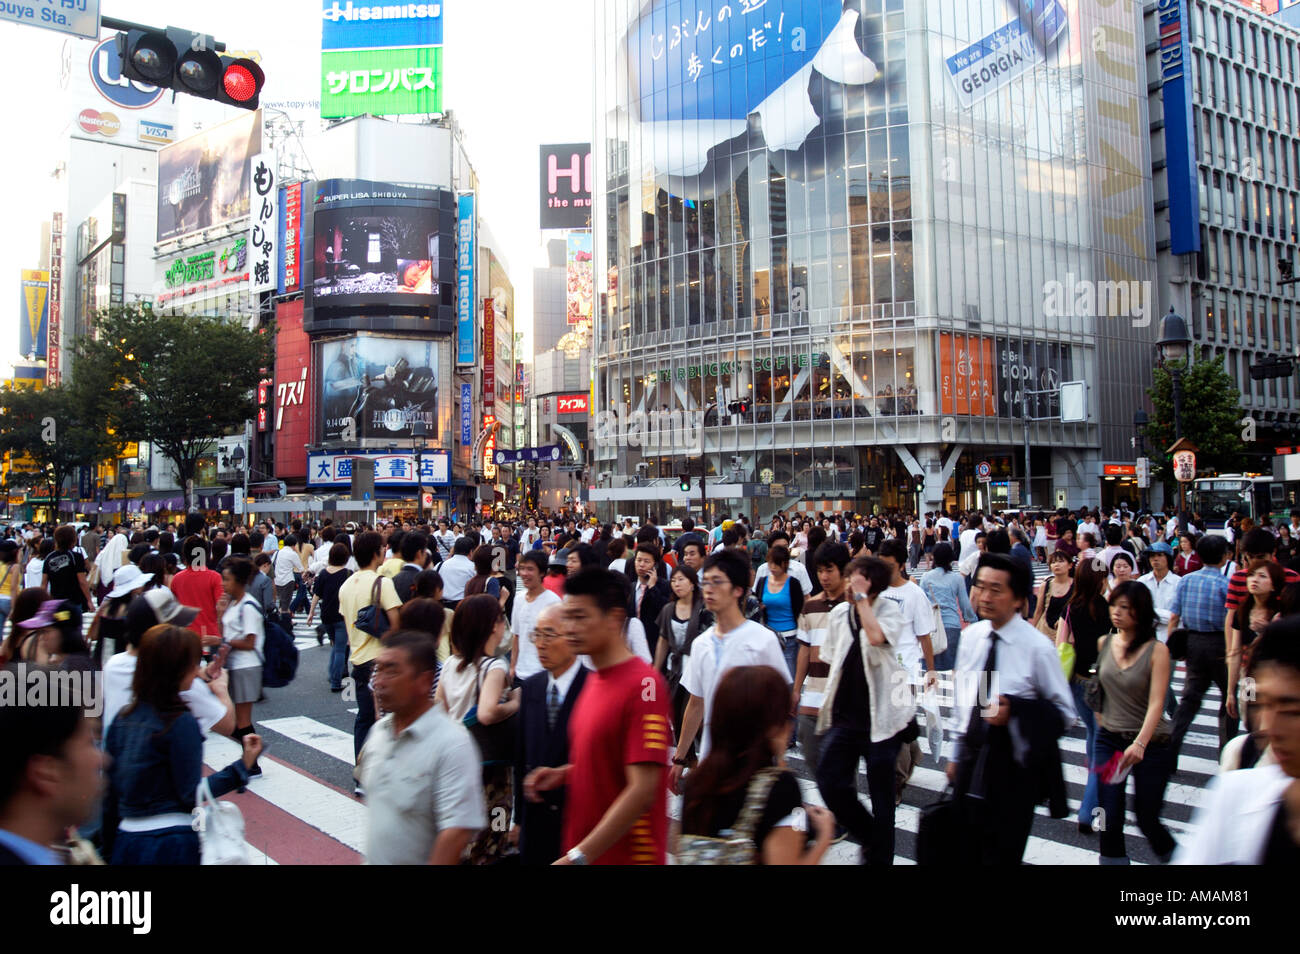 Crowds of people crossing street at Hachiko crossing in Shibuya Tokyo Japan Stock Photo